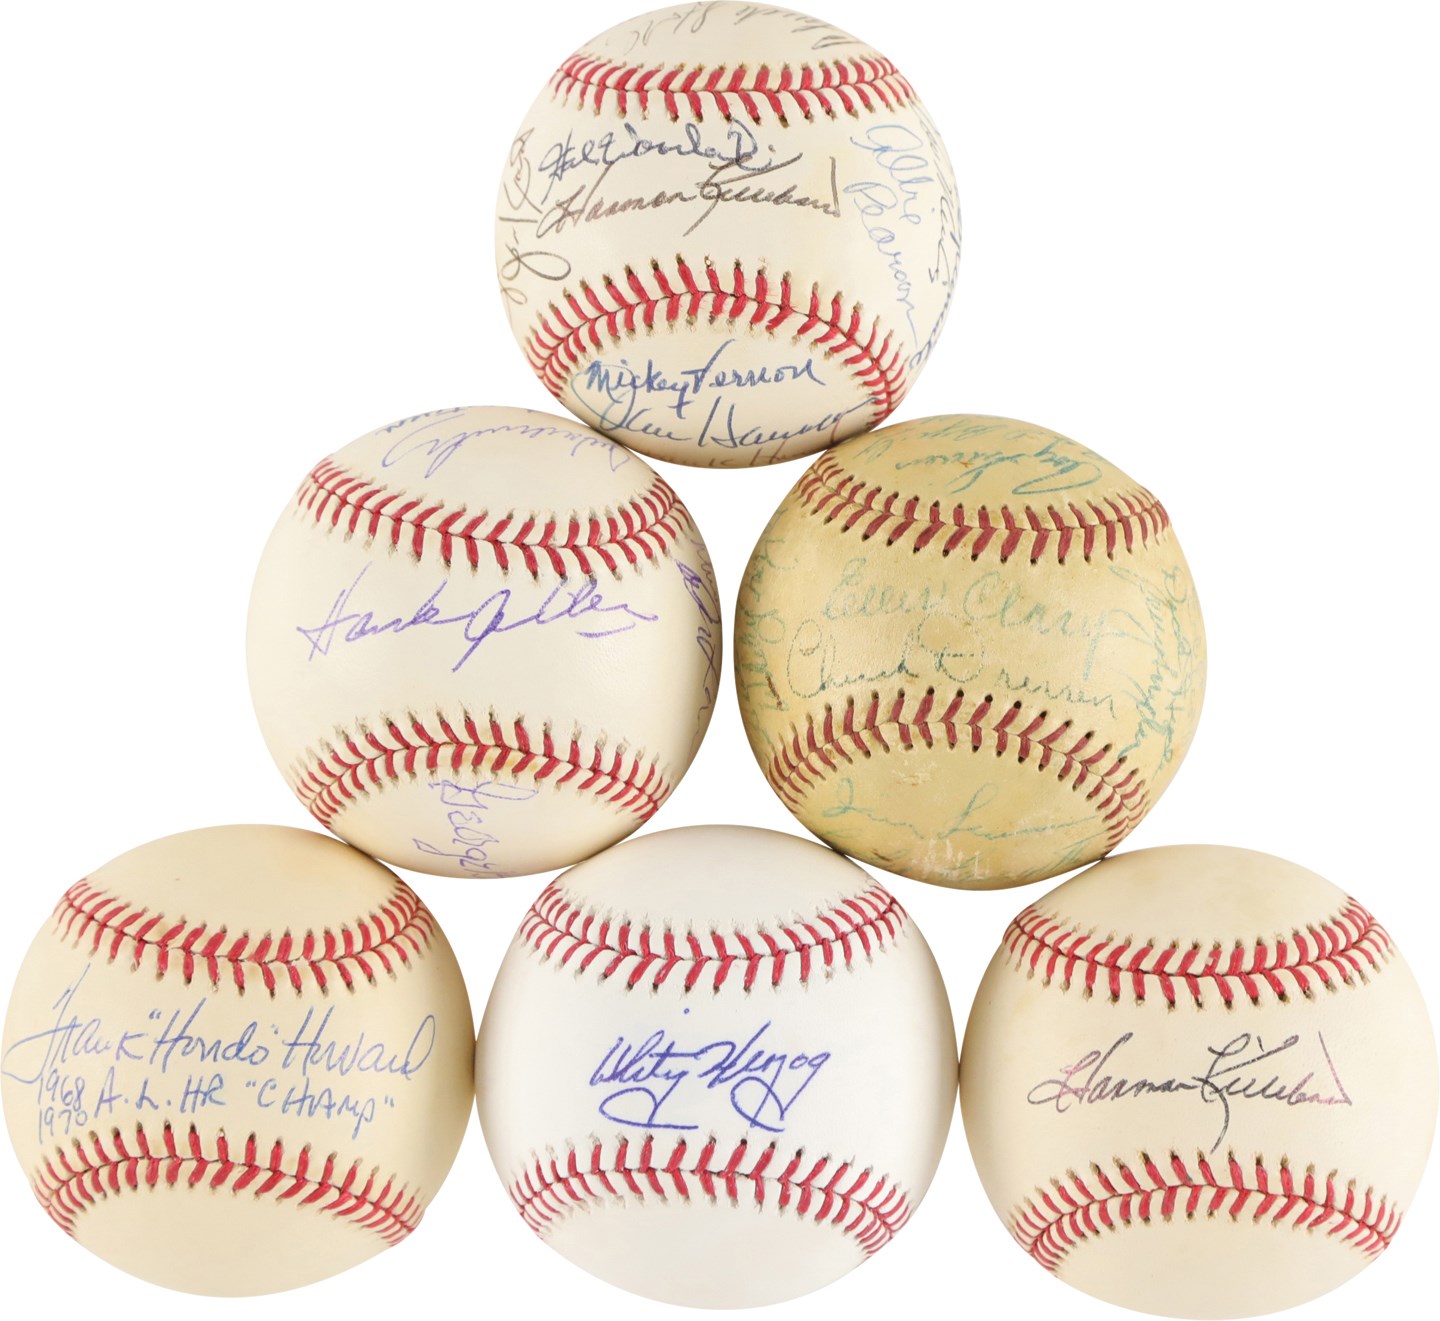 Washington Senators Greats Signed Baseball Collection (32)